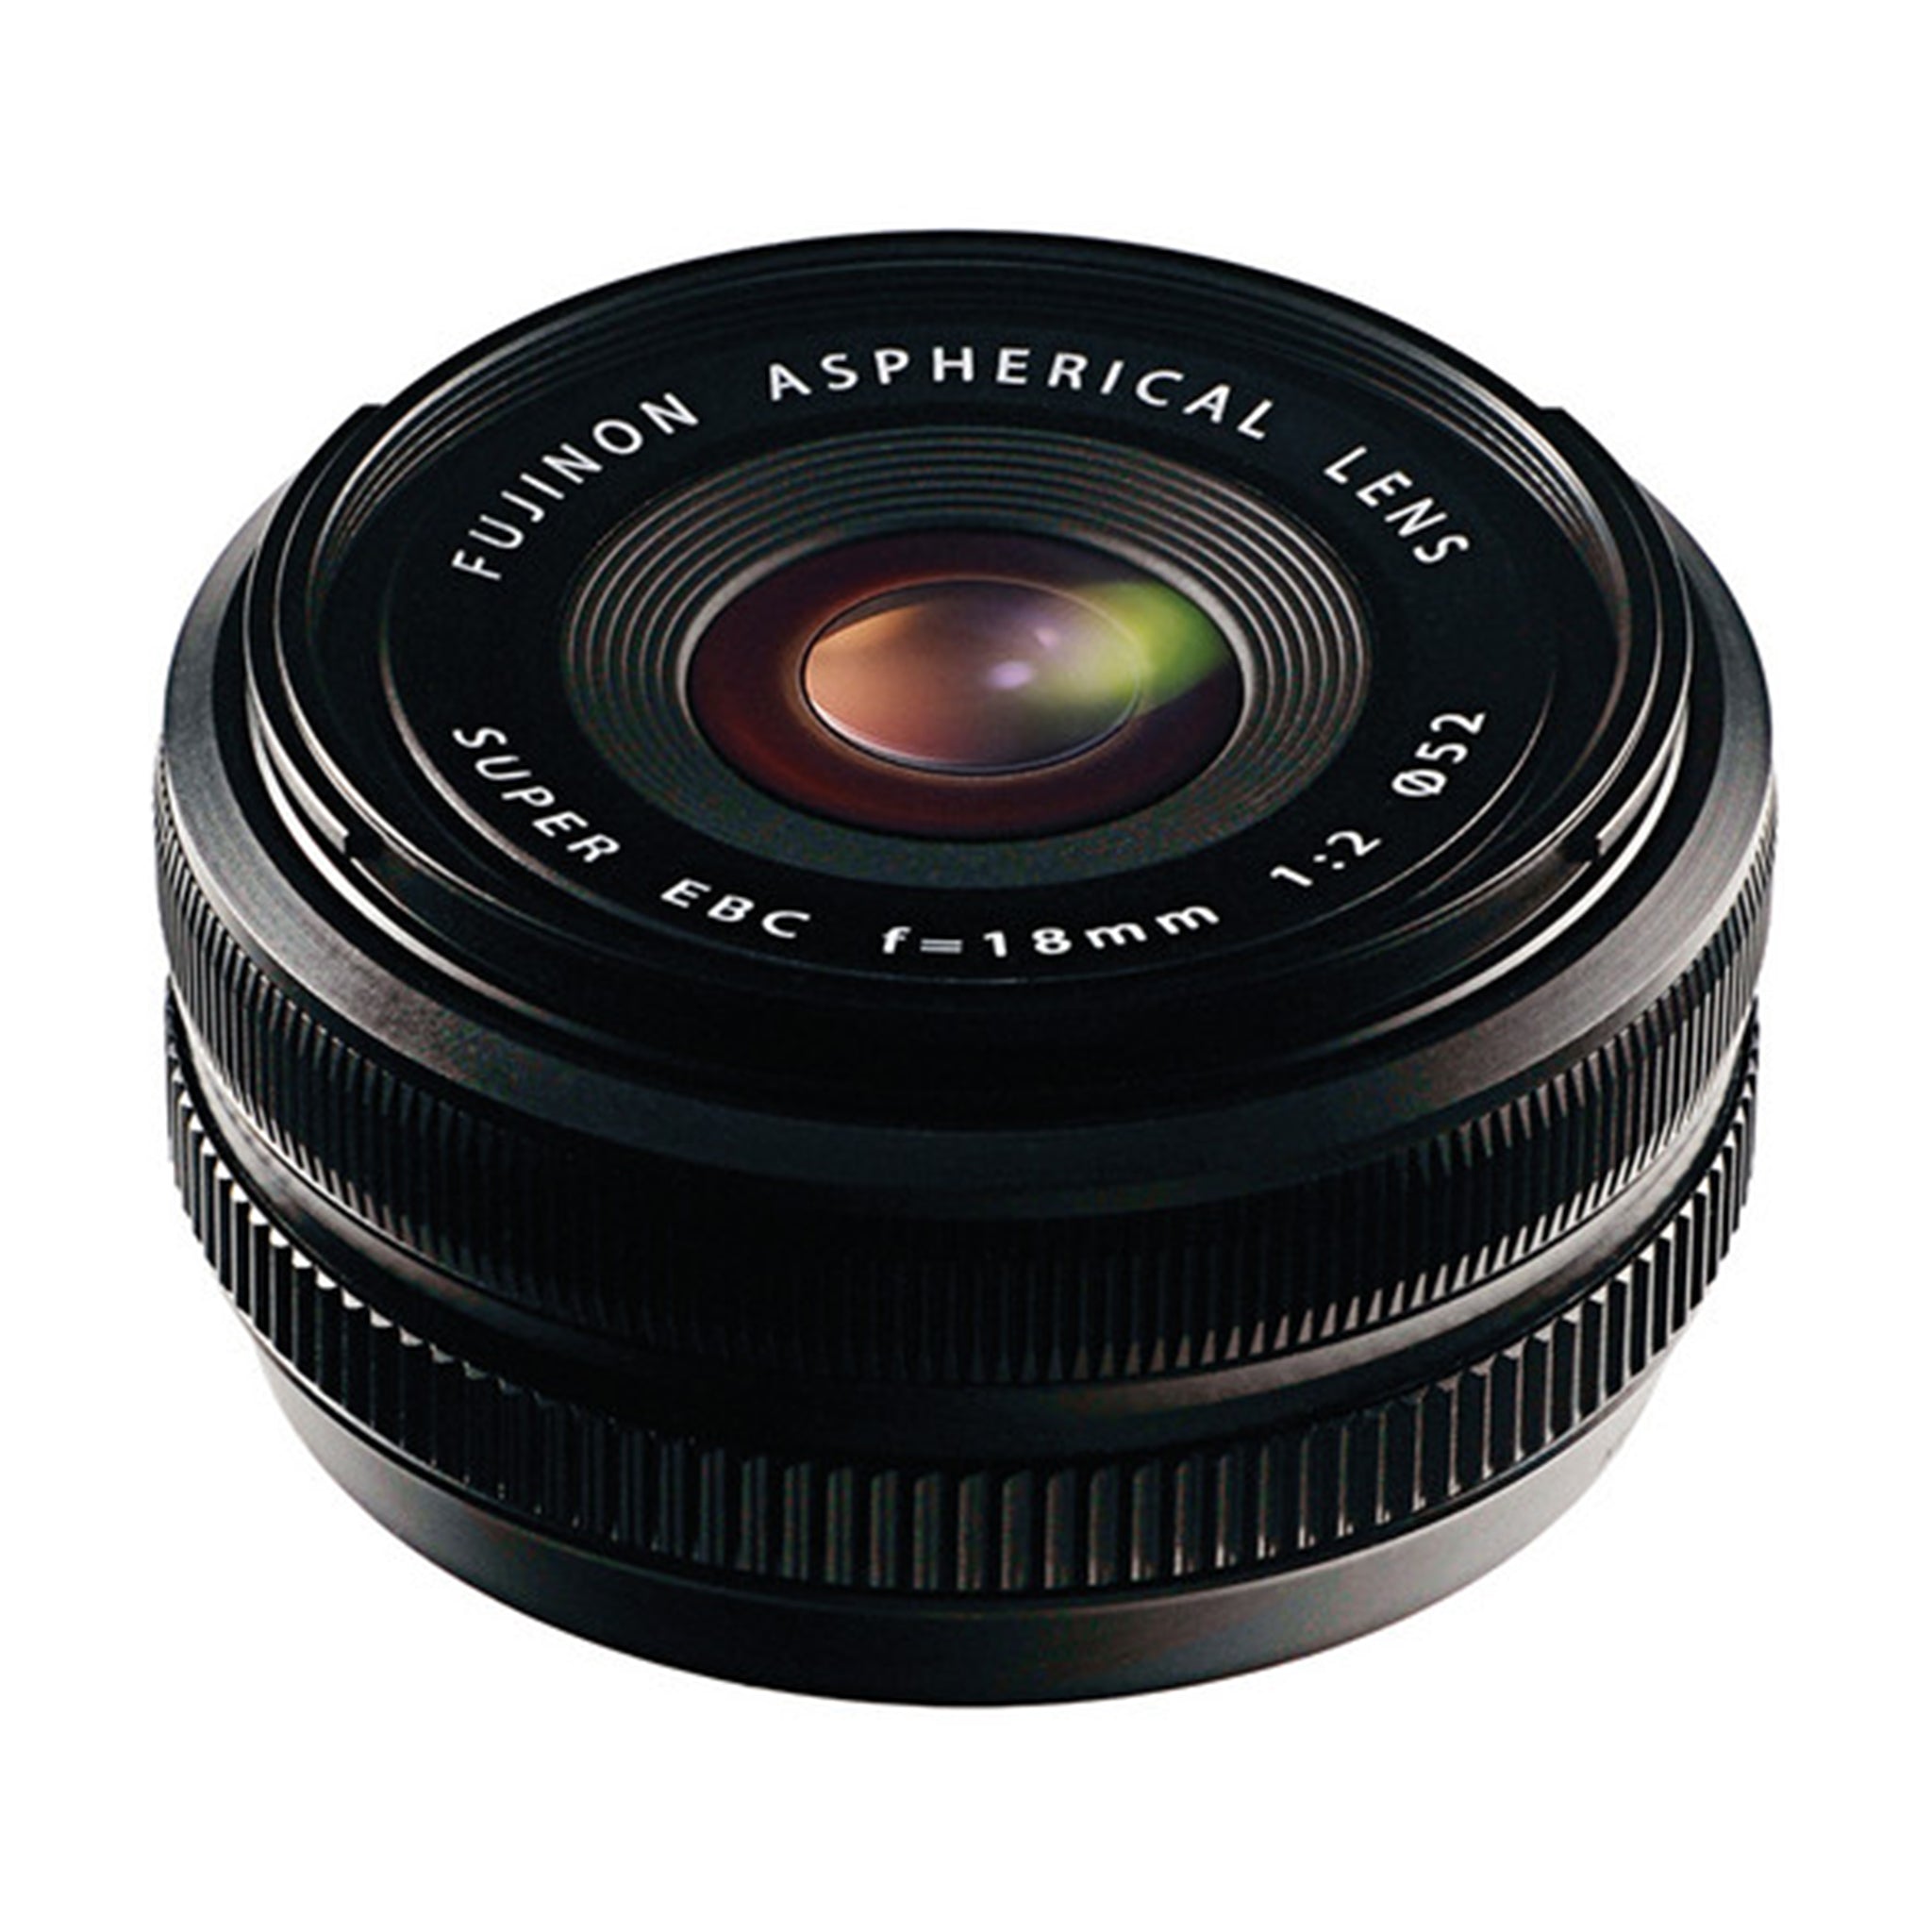 Fujifilm XF 18mm F2 R Lens